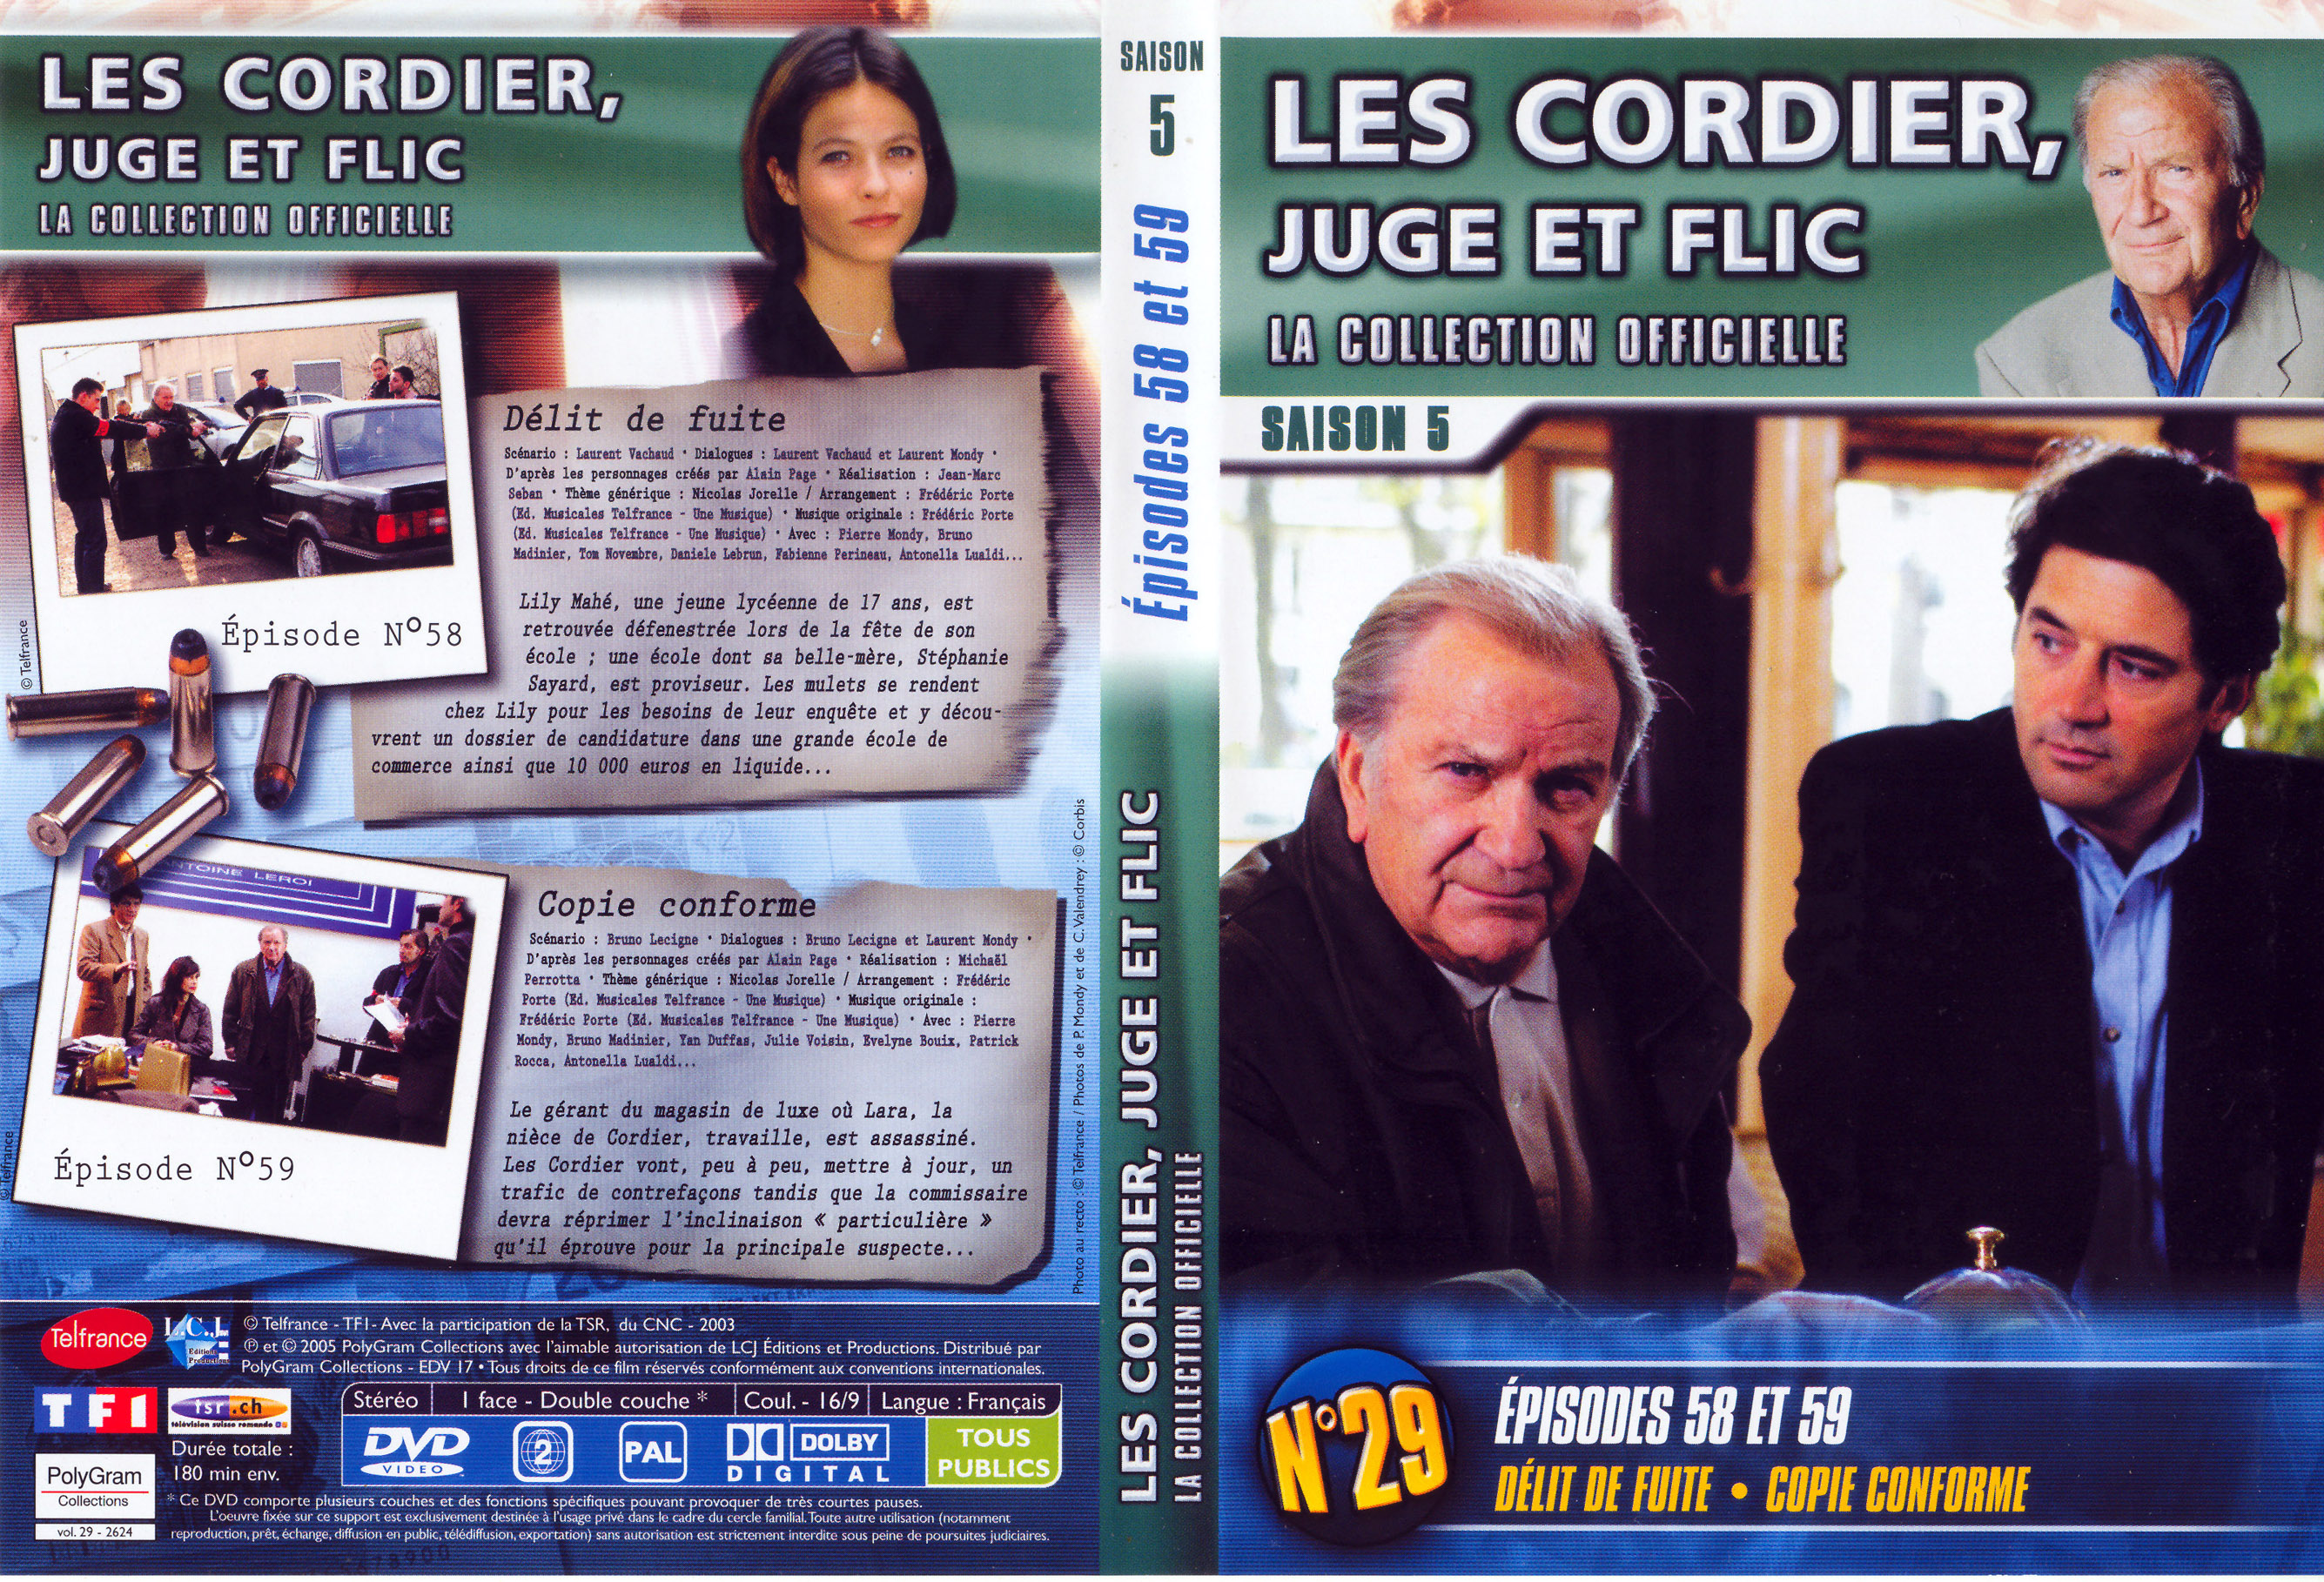 Jaquette DVD Les cordier juge et flic Saison 5 vol 29